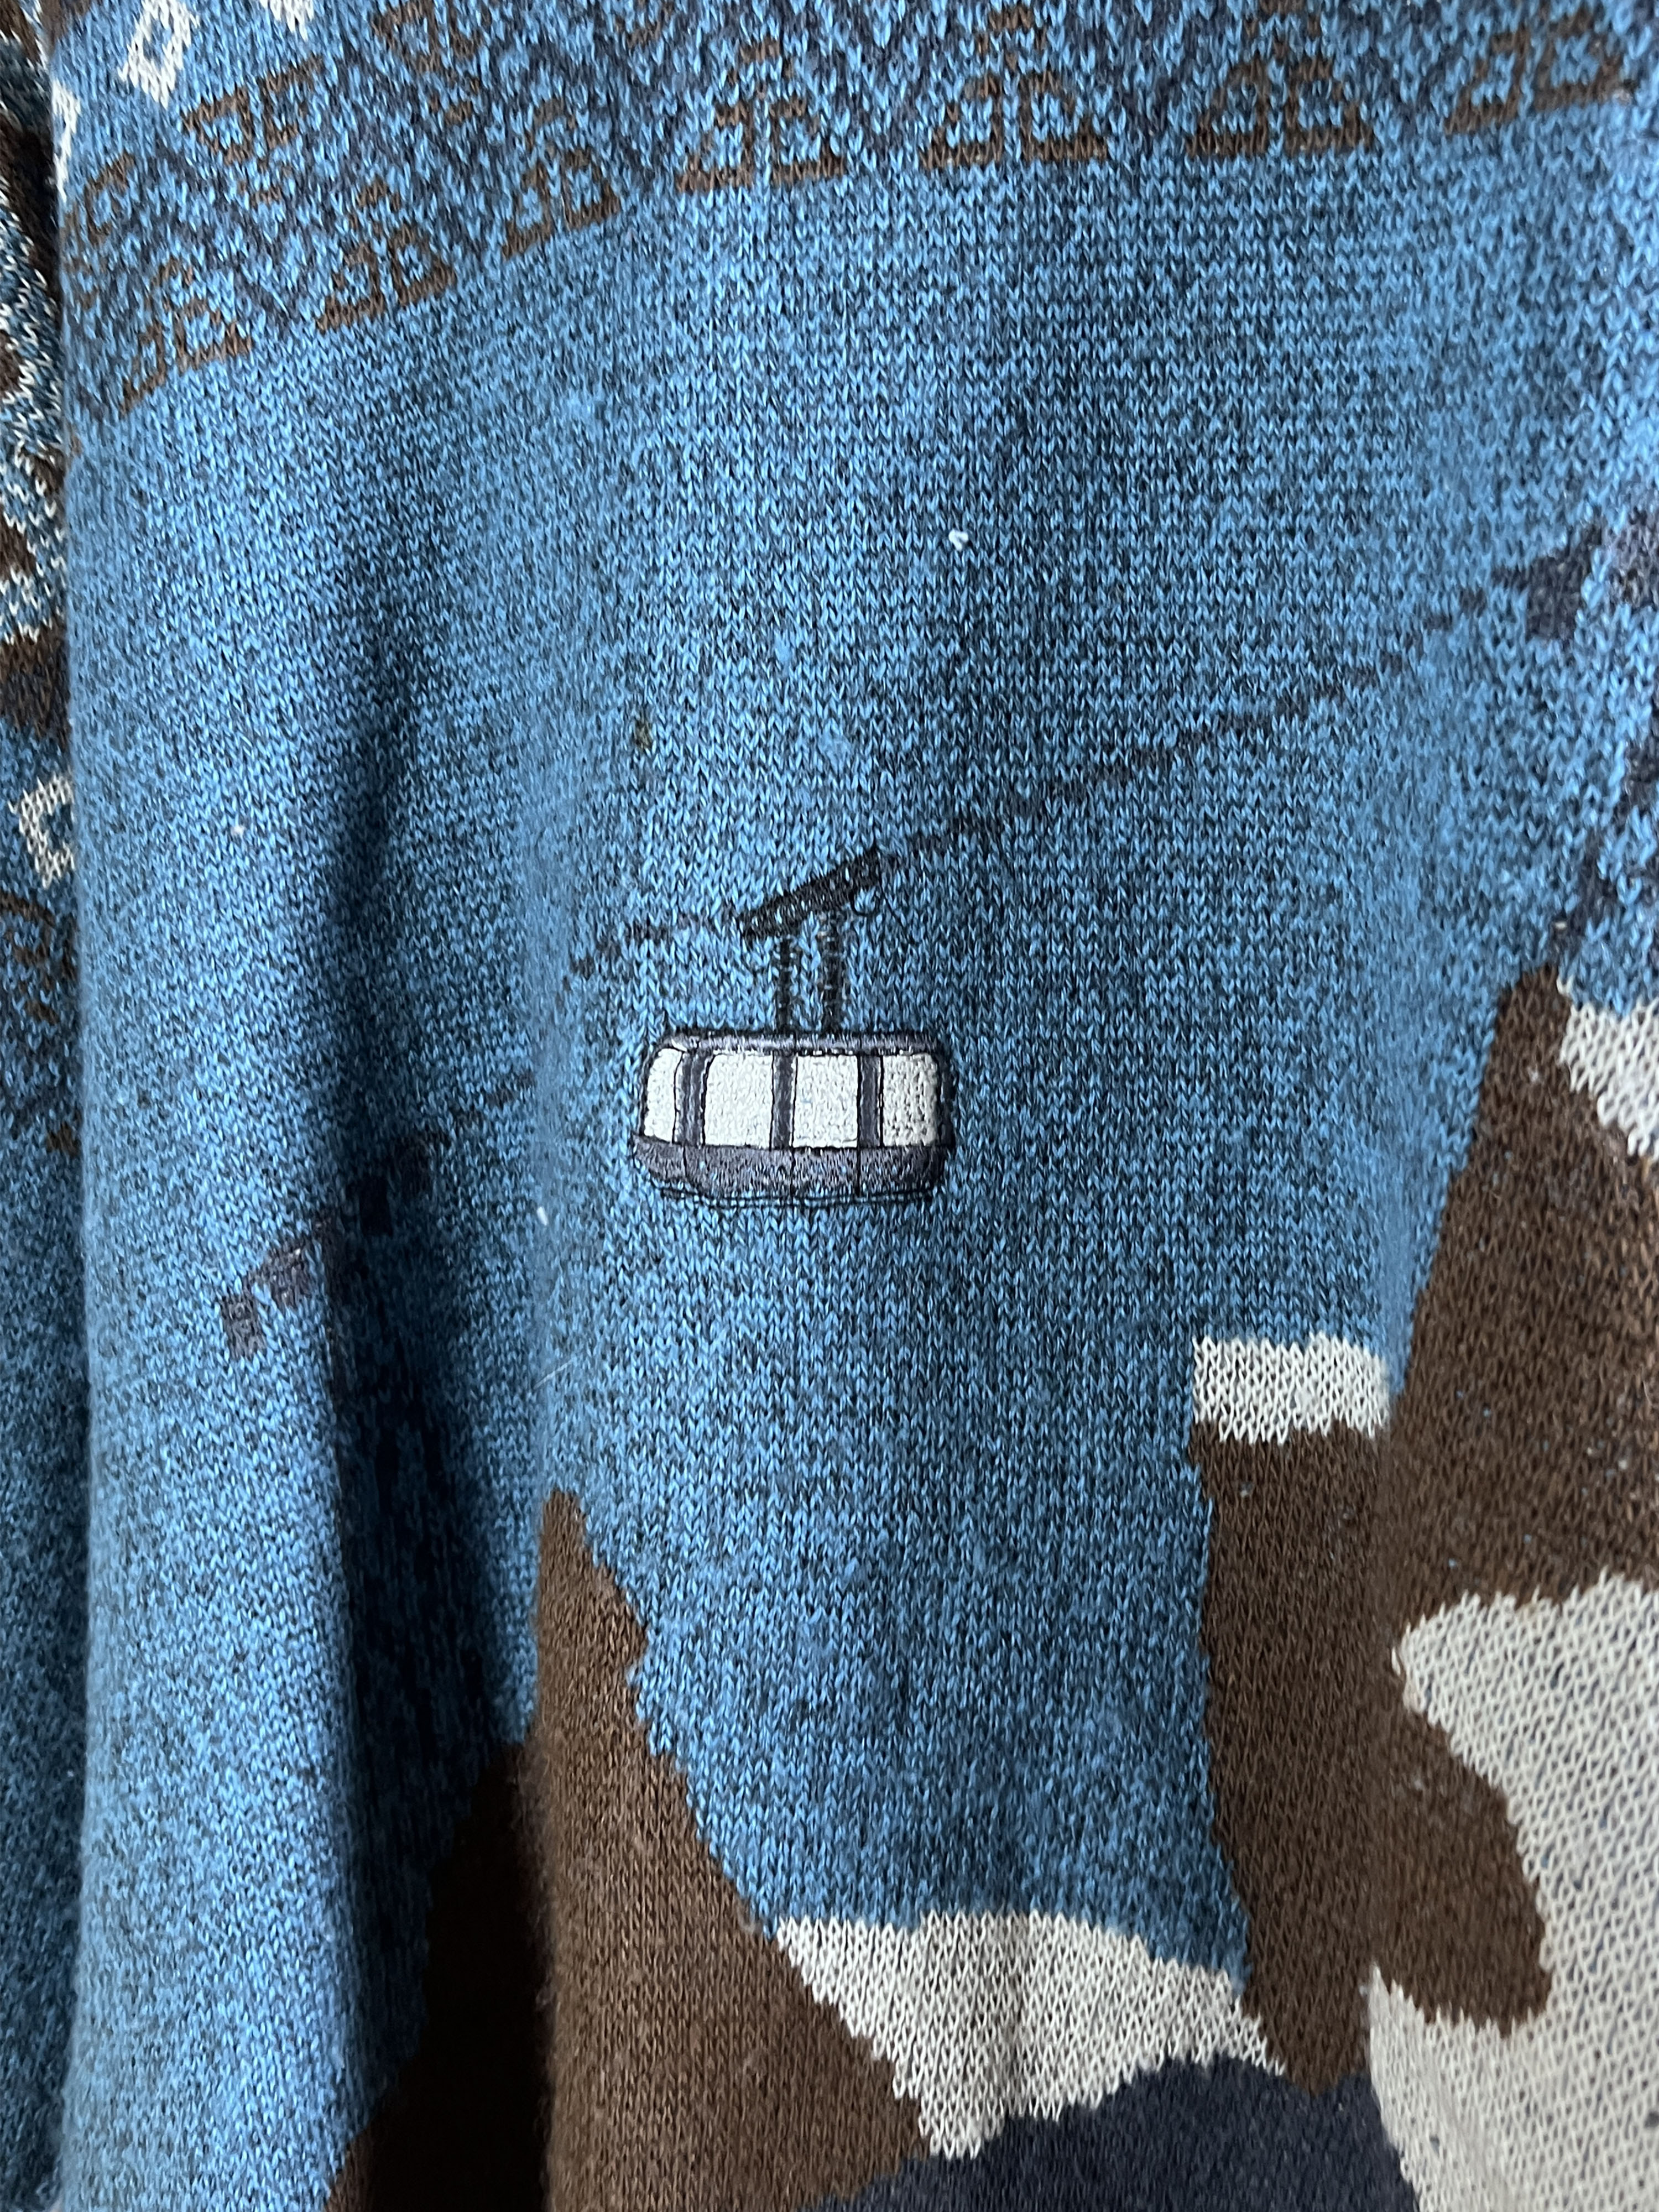 Ruggeni pattern knit